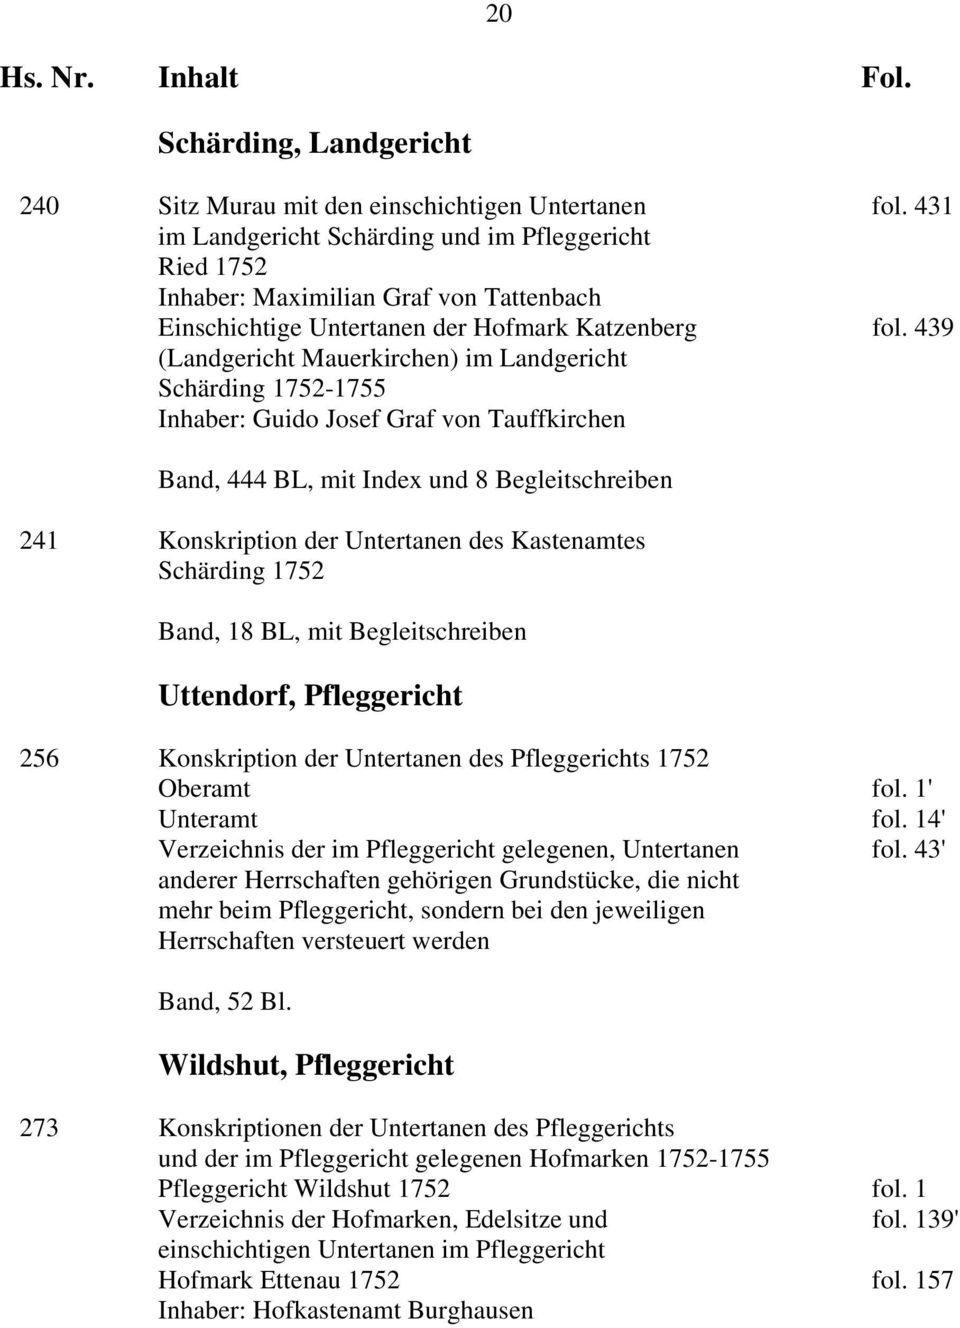 Kastenamtes Schärding 1752 Band, 18 BL, mit Begleitschreiben Uttendorf, Pfleggericht 256 Konskription der Untertanen des Pfleggerichts 1752 Oberamt fol. 1' Unteramt fol.